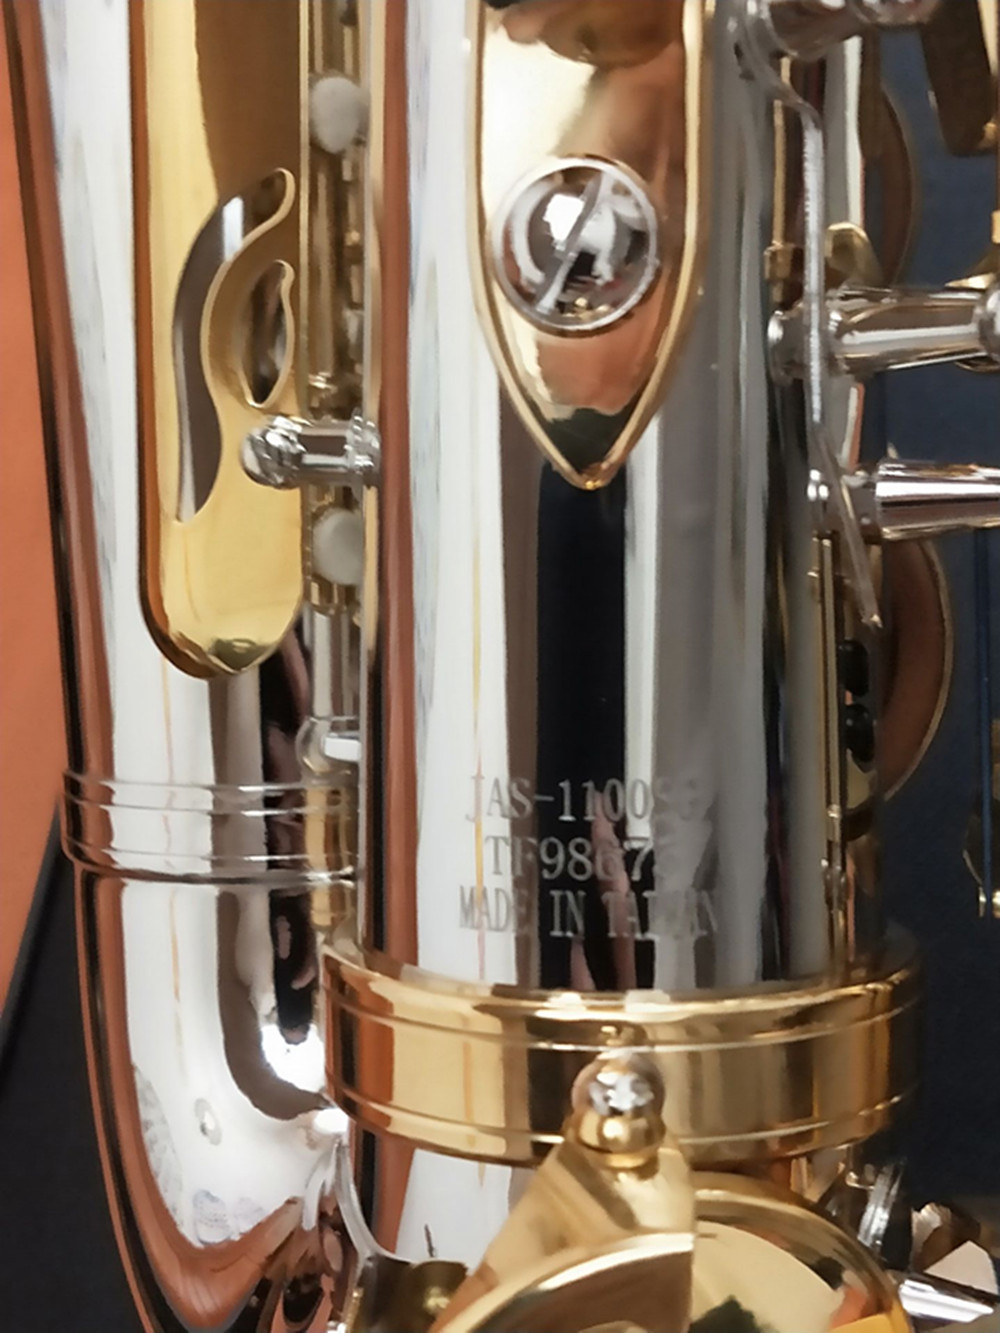 木星jas-1100SGアルトサックスエブチューンブラス楽器ニッケルシルバーメッキボディゴールドラッカーキーサックスとマウスピース